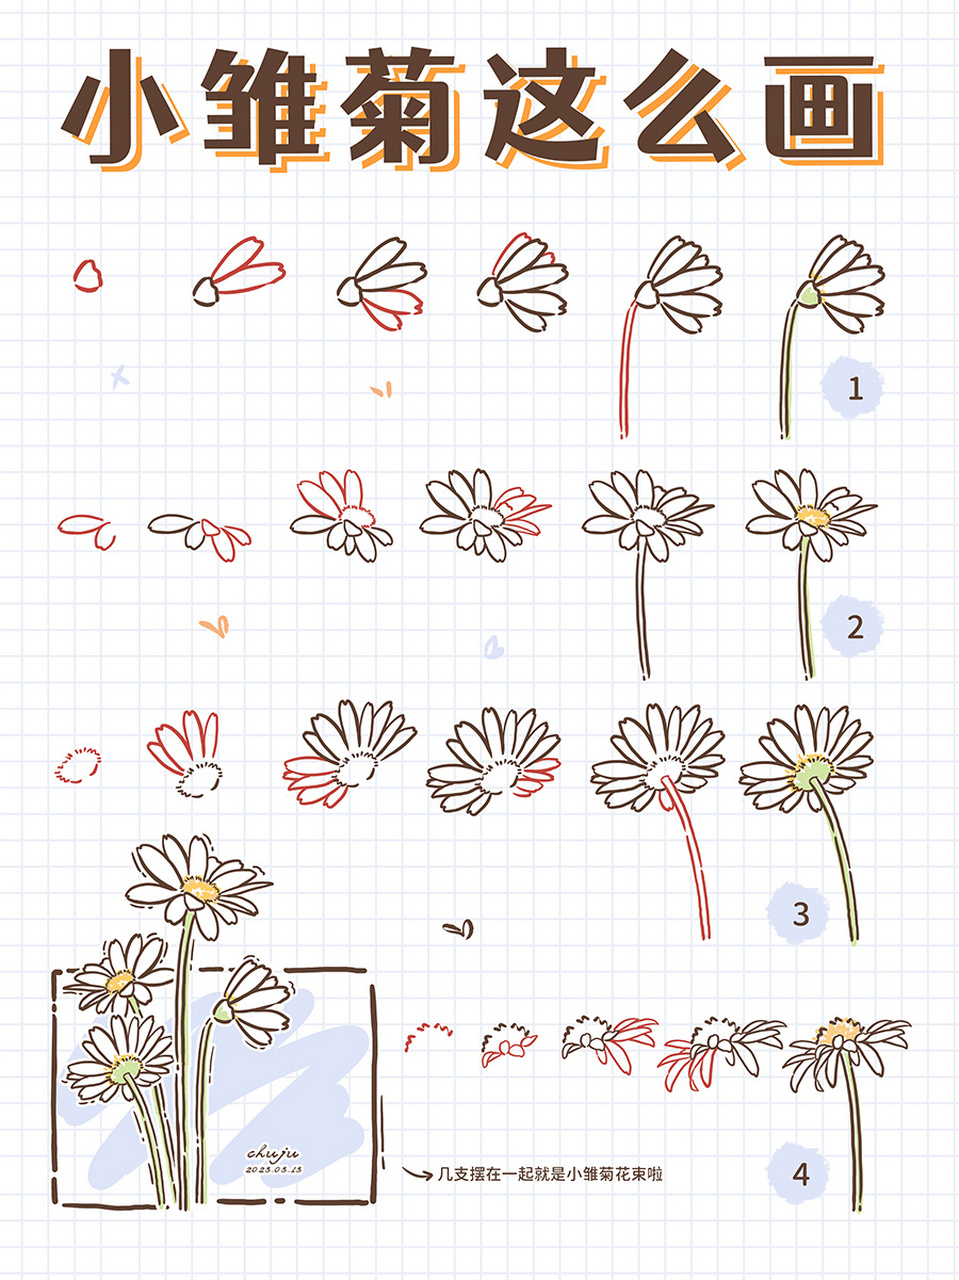 【简笔画花卉系列4】超简单又小清新的小雏菊 9393934支超简单